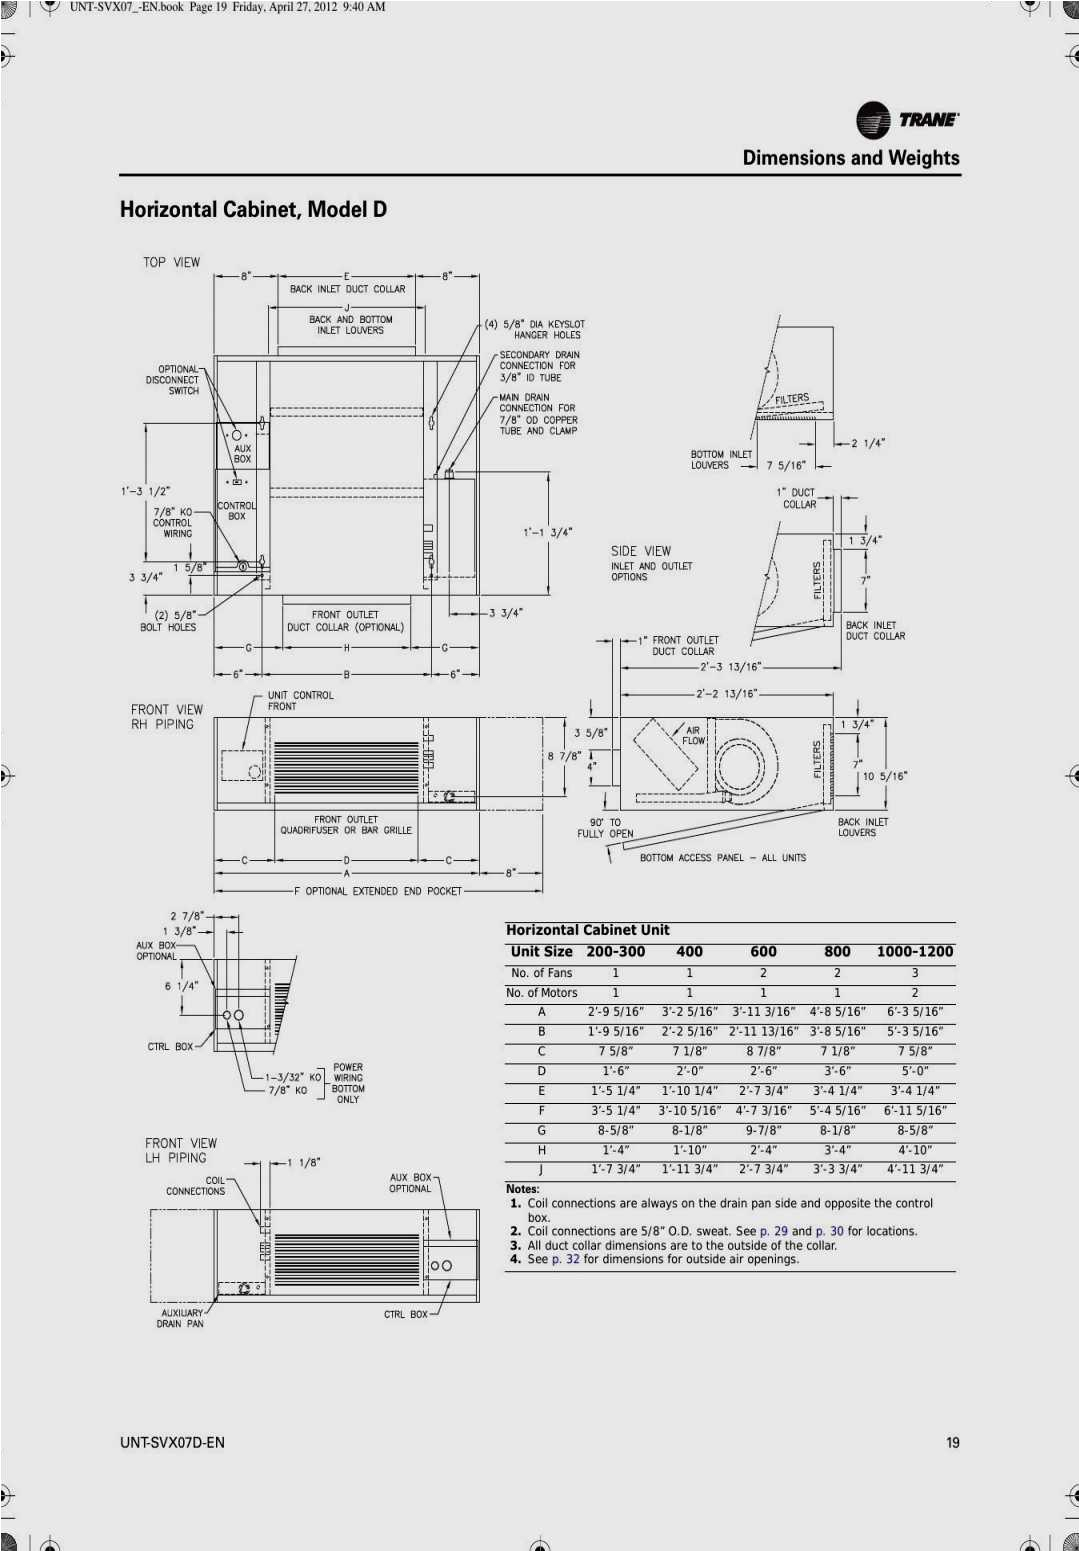 grundfos boiler wiring diagram wiring diagram home grundfos pump motor wiring diagrams